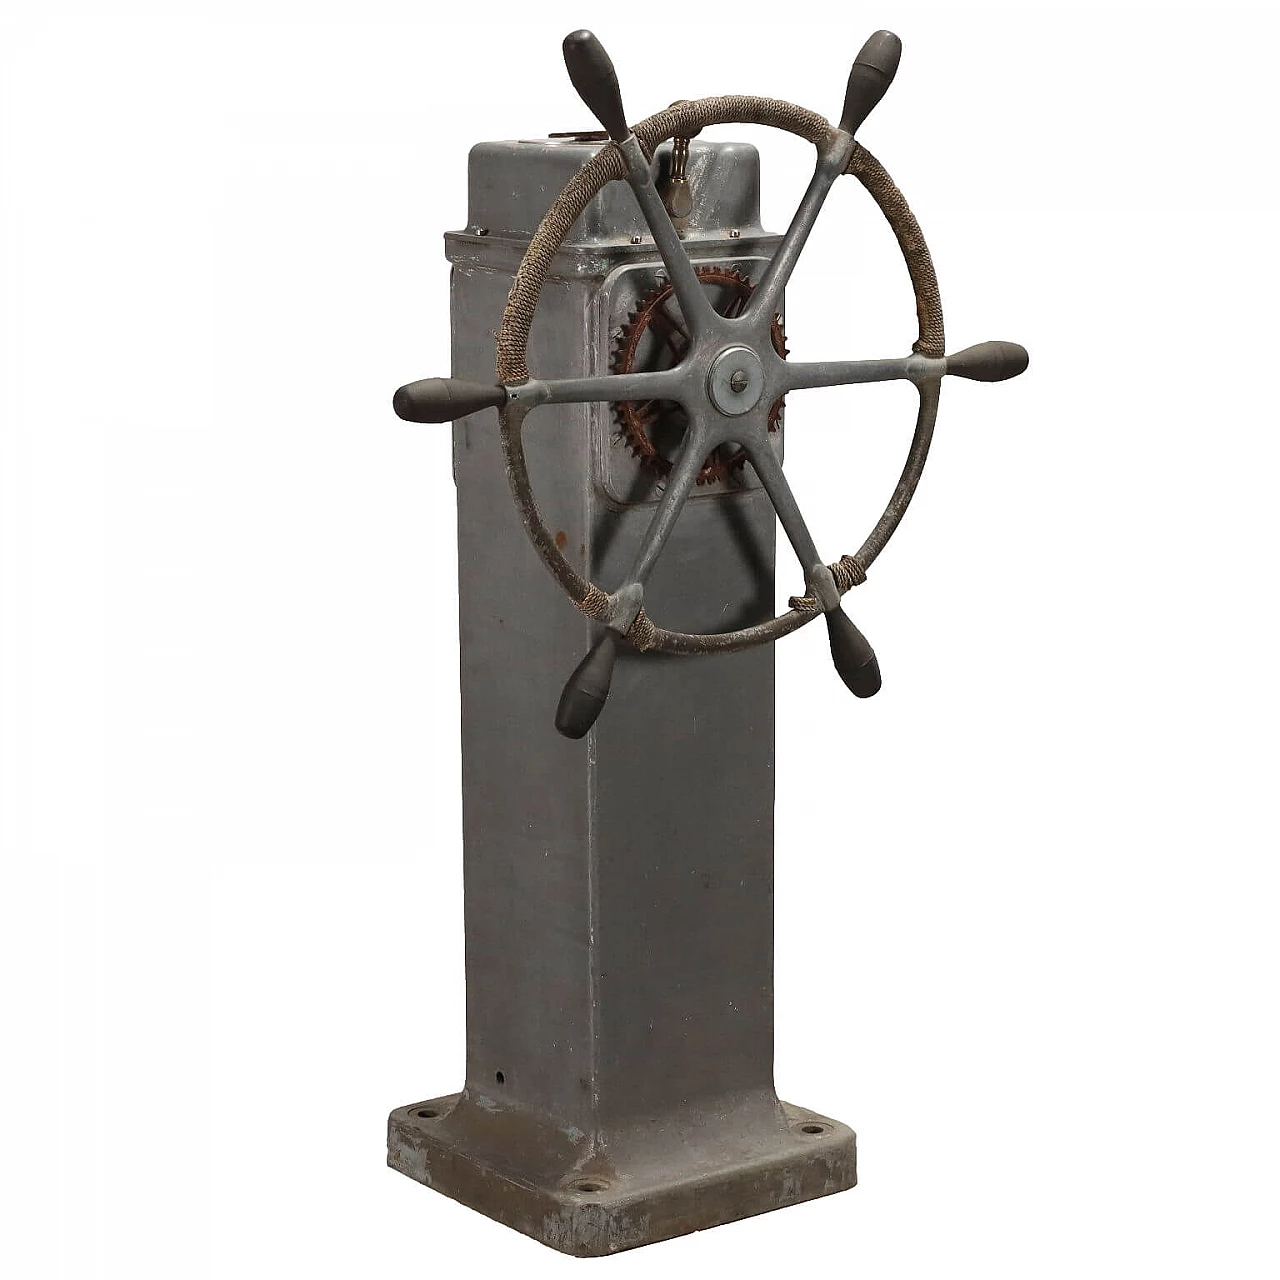 Sperry Gyroscope Company ship's wheel 1